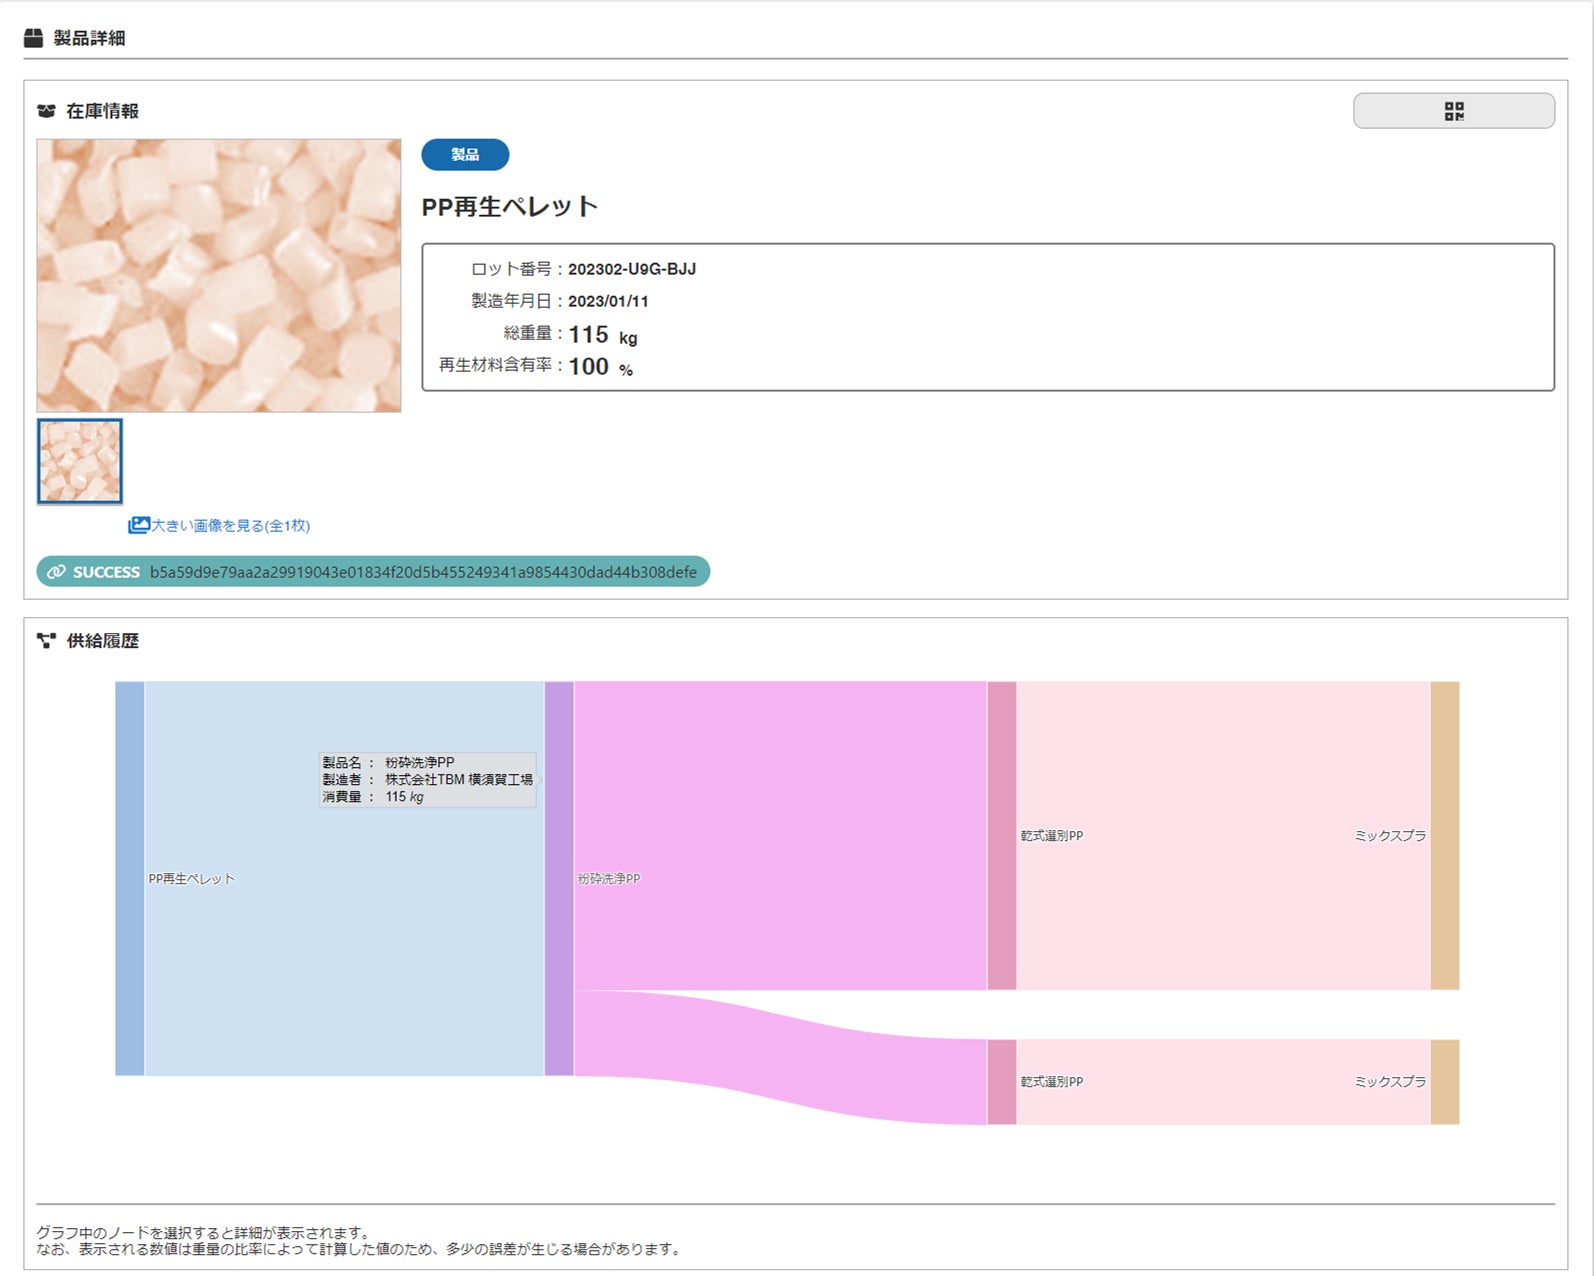 TBM、横須賀工場から出荷される再生素材のトレーサビリティを確保するための実証実験をＪＥＭＳ社と実施のサブ画像2_管理画面イメージ